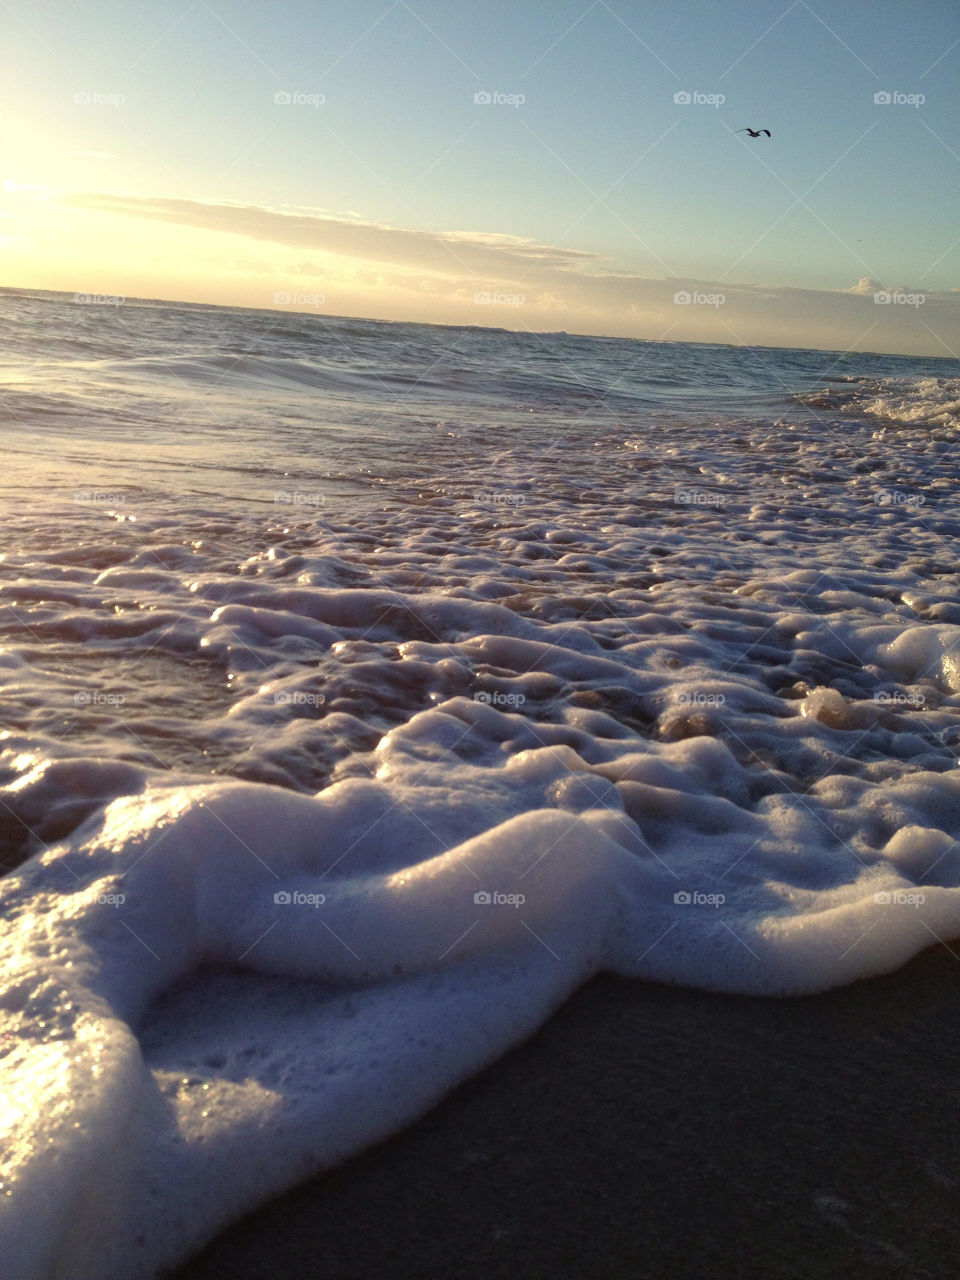 south beach miami florida ocean sunrise sea by bcpix